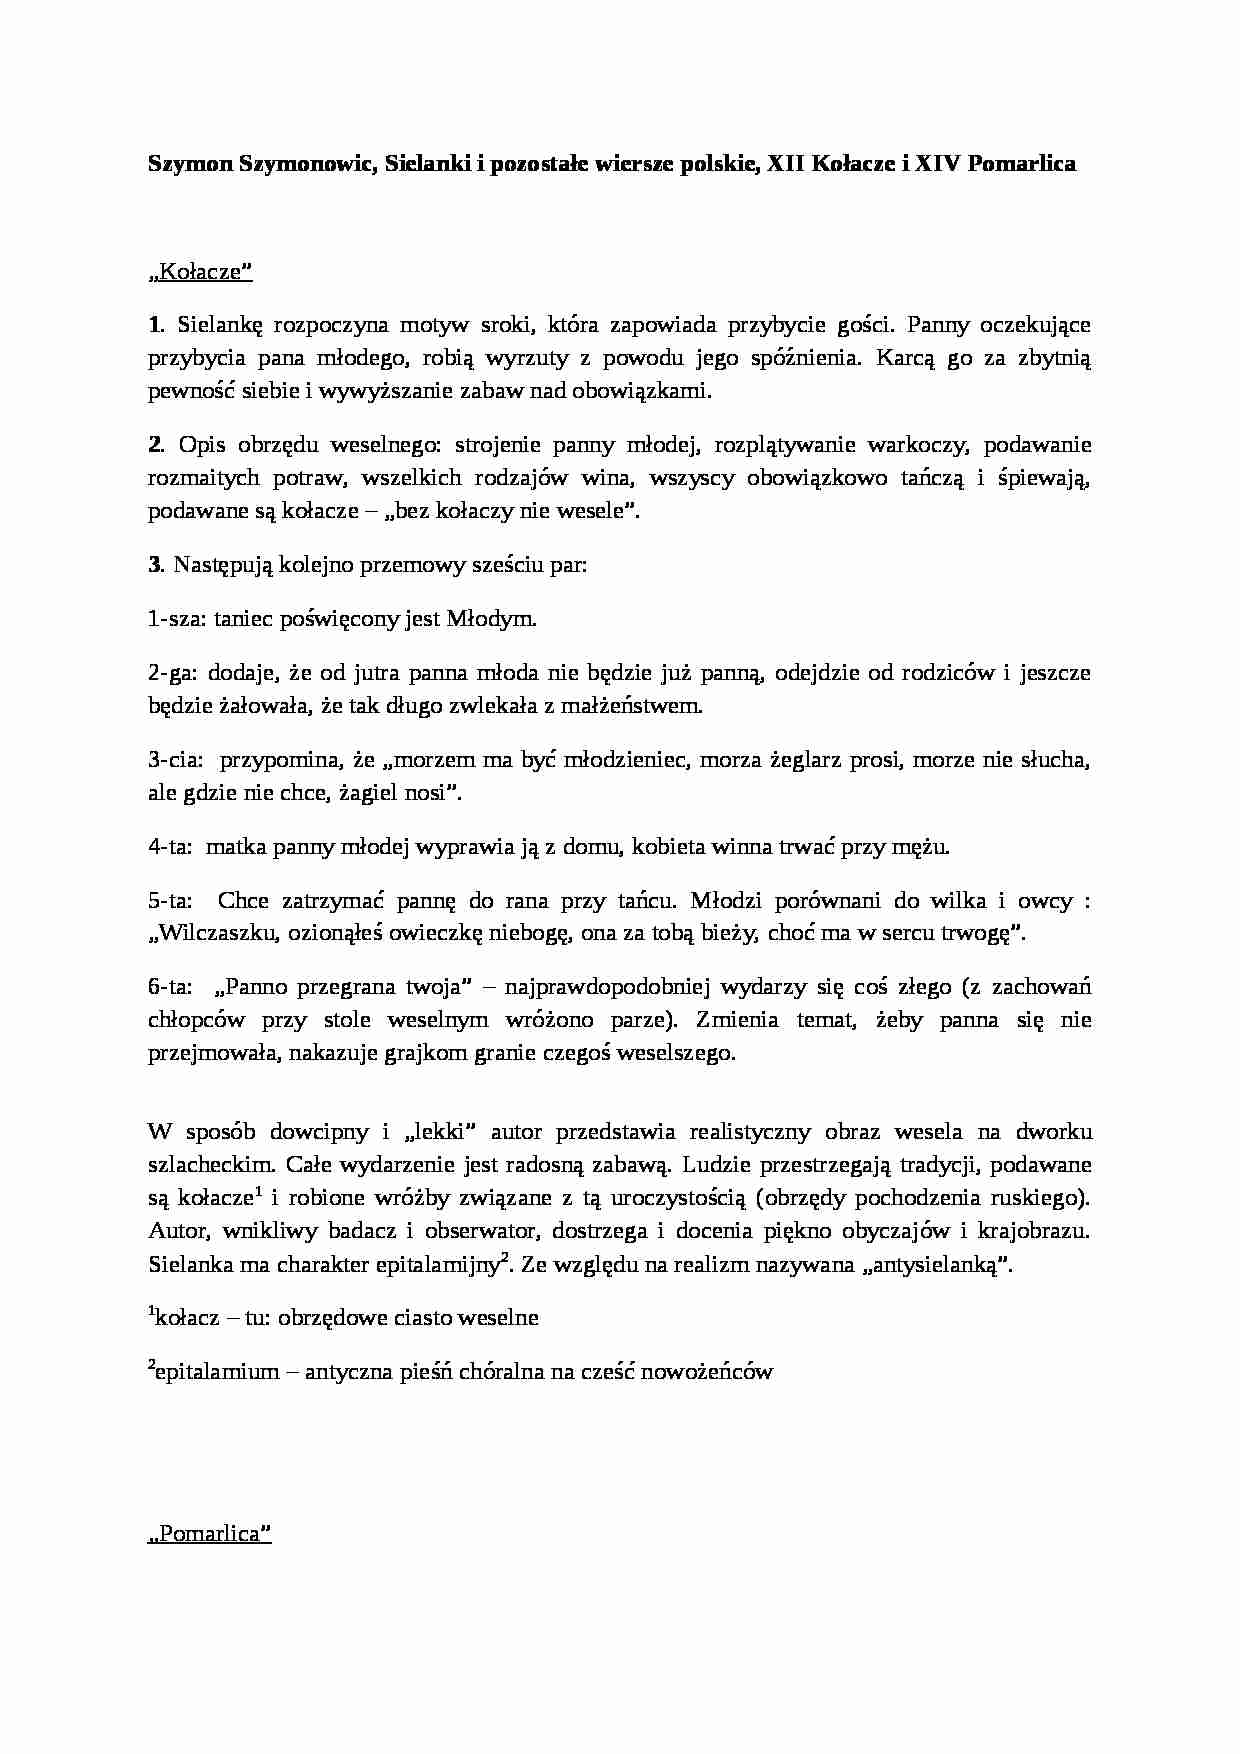 Szymon Szymonowic, Kołacze i Pomarlica - strona 1